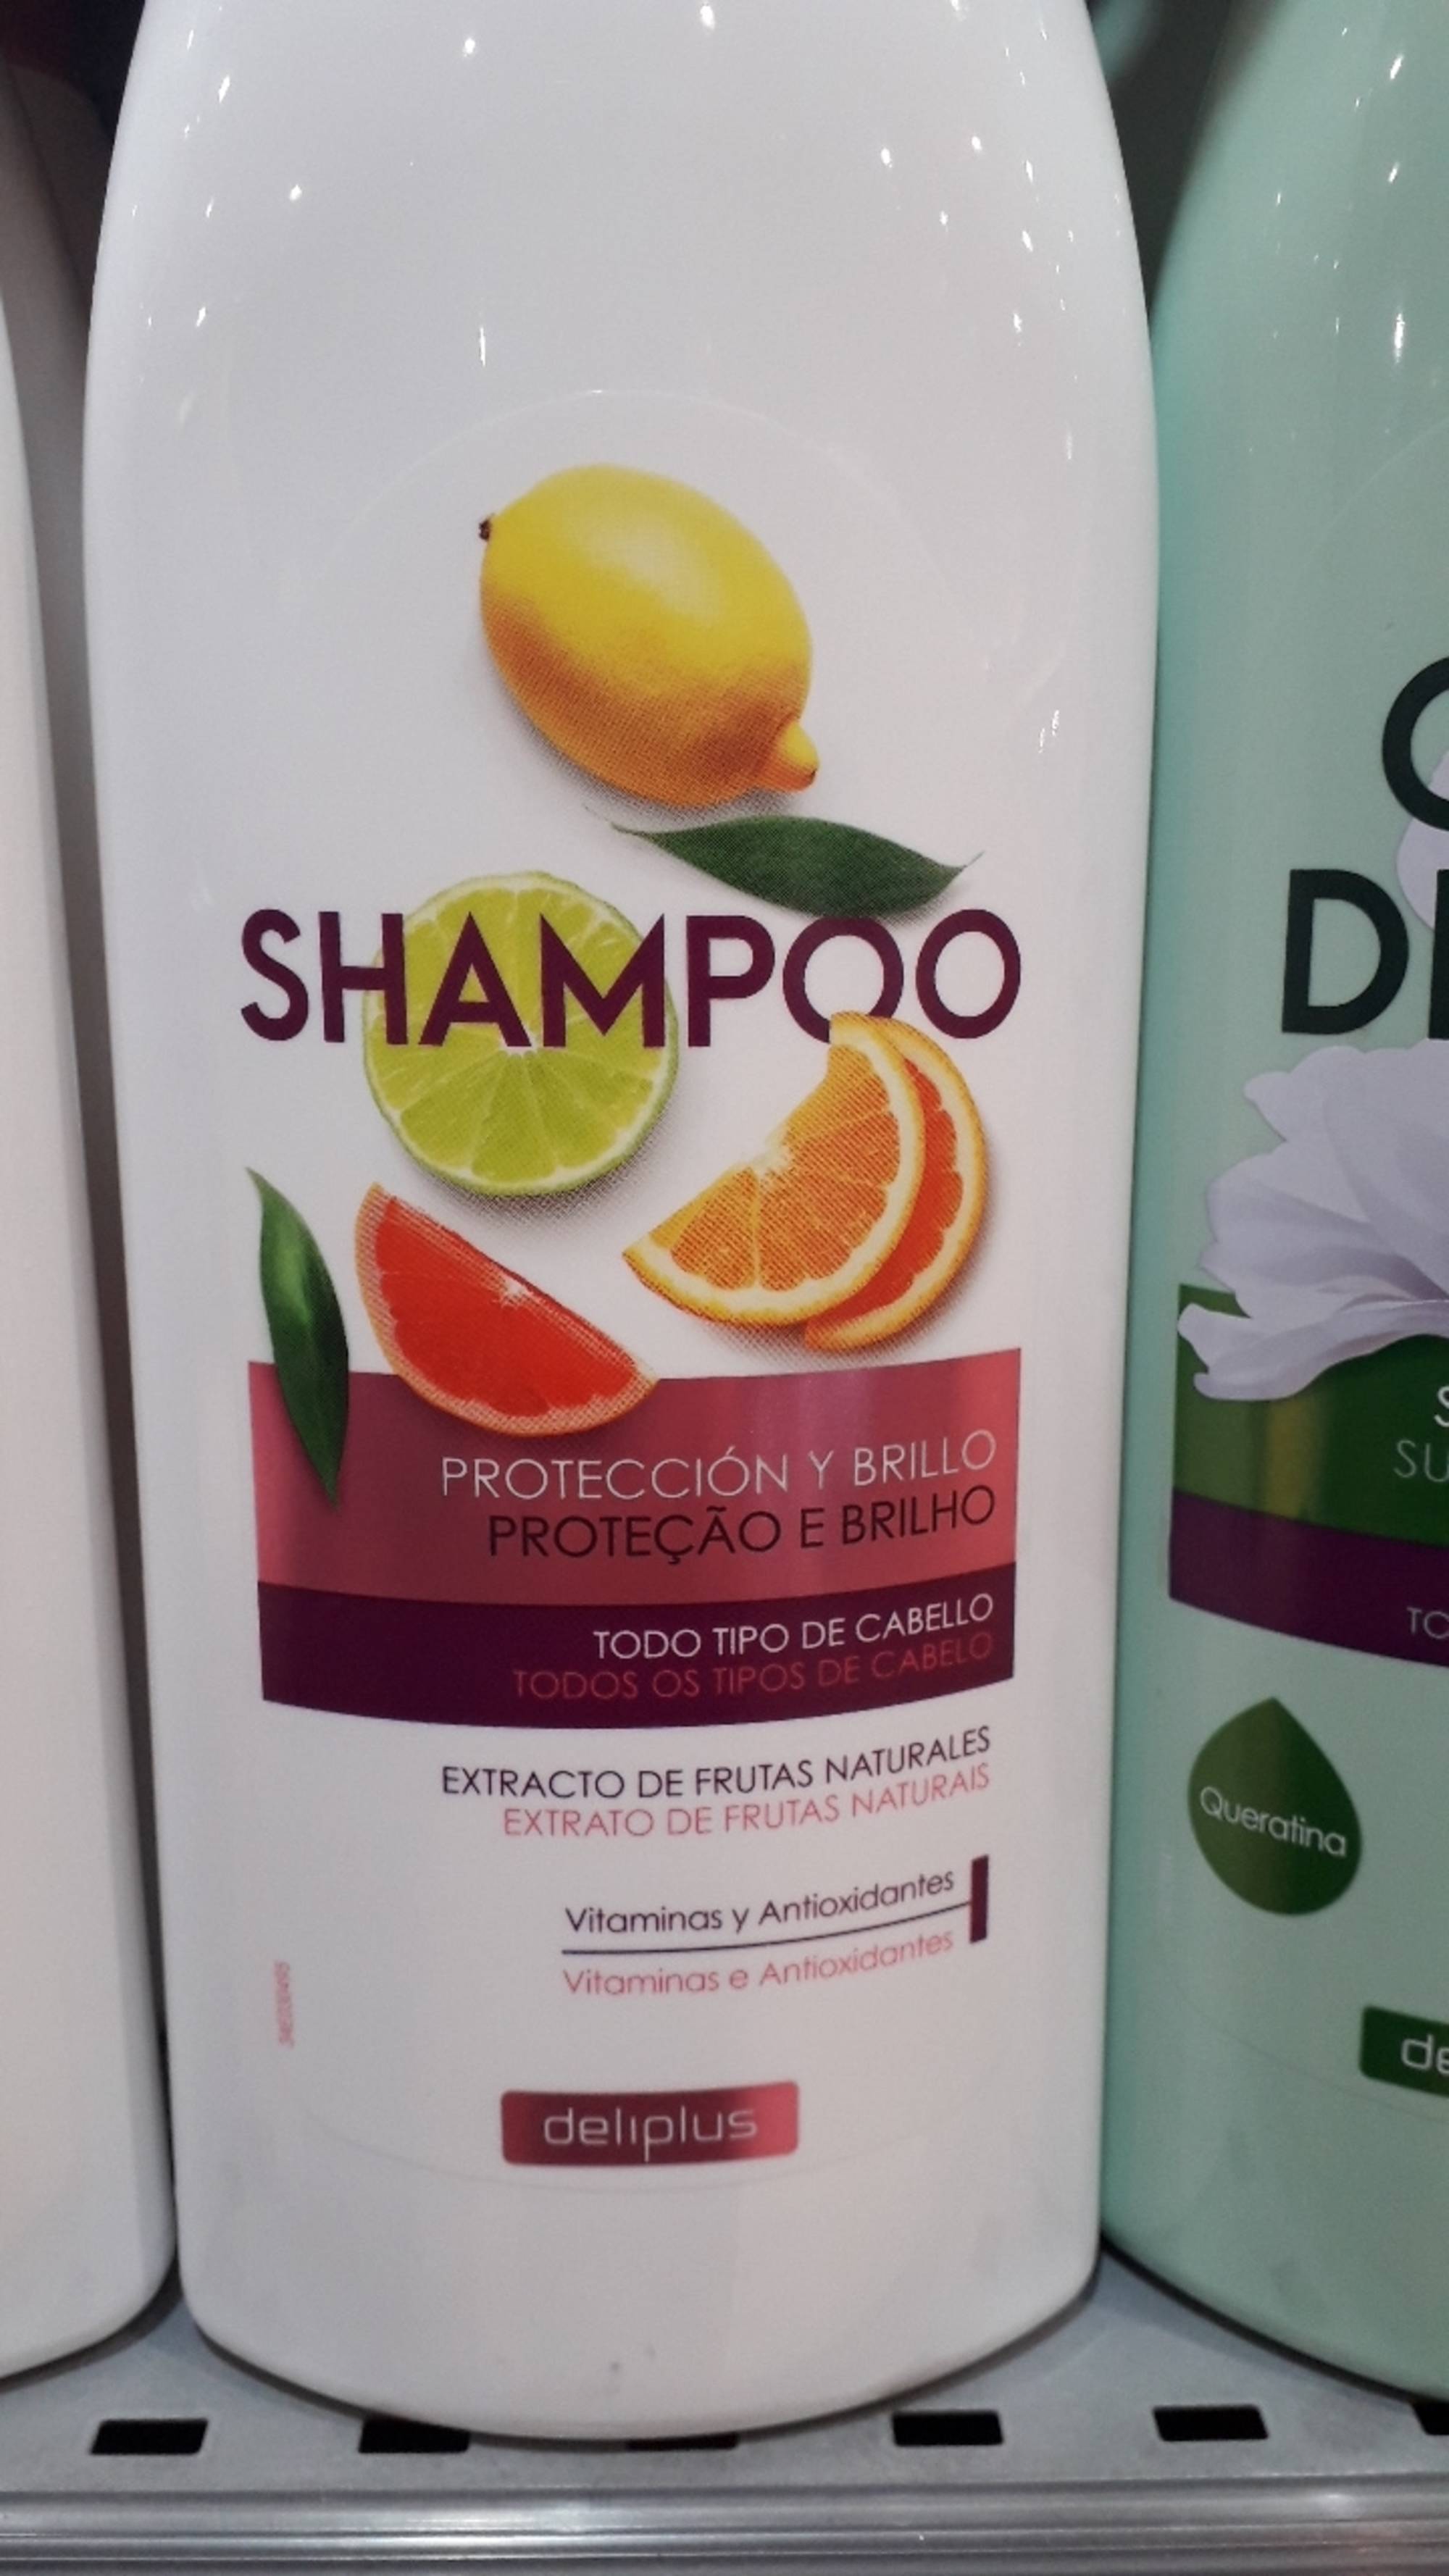 DELIPLUS - Protección y brillo - Shampoo 